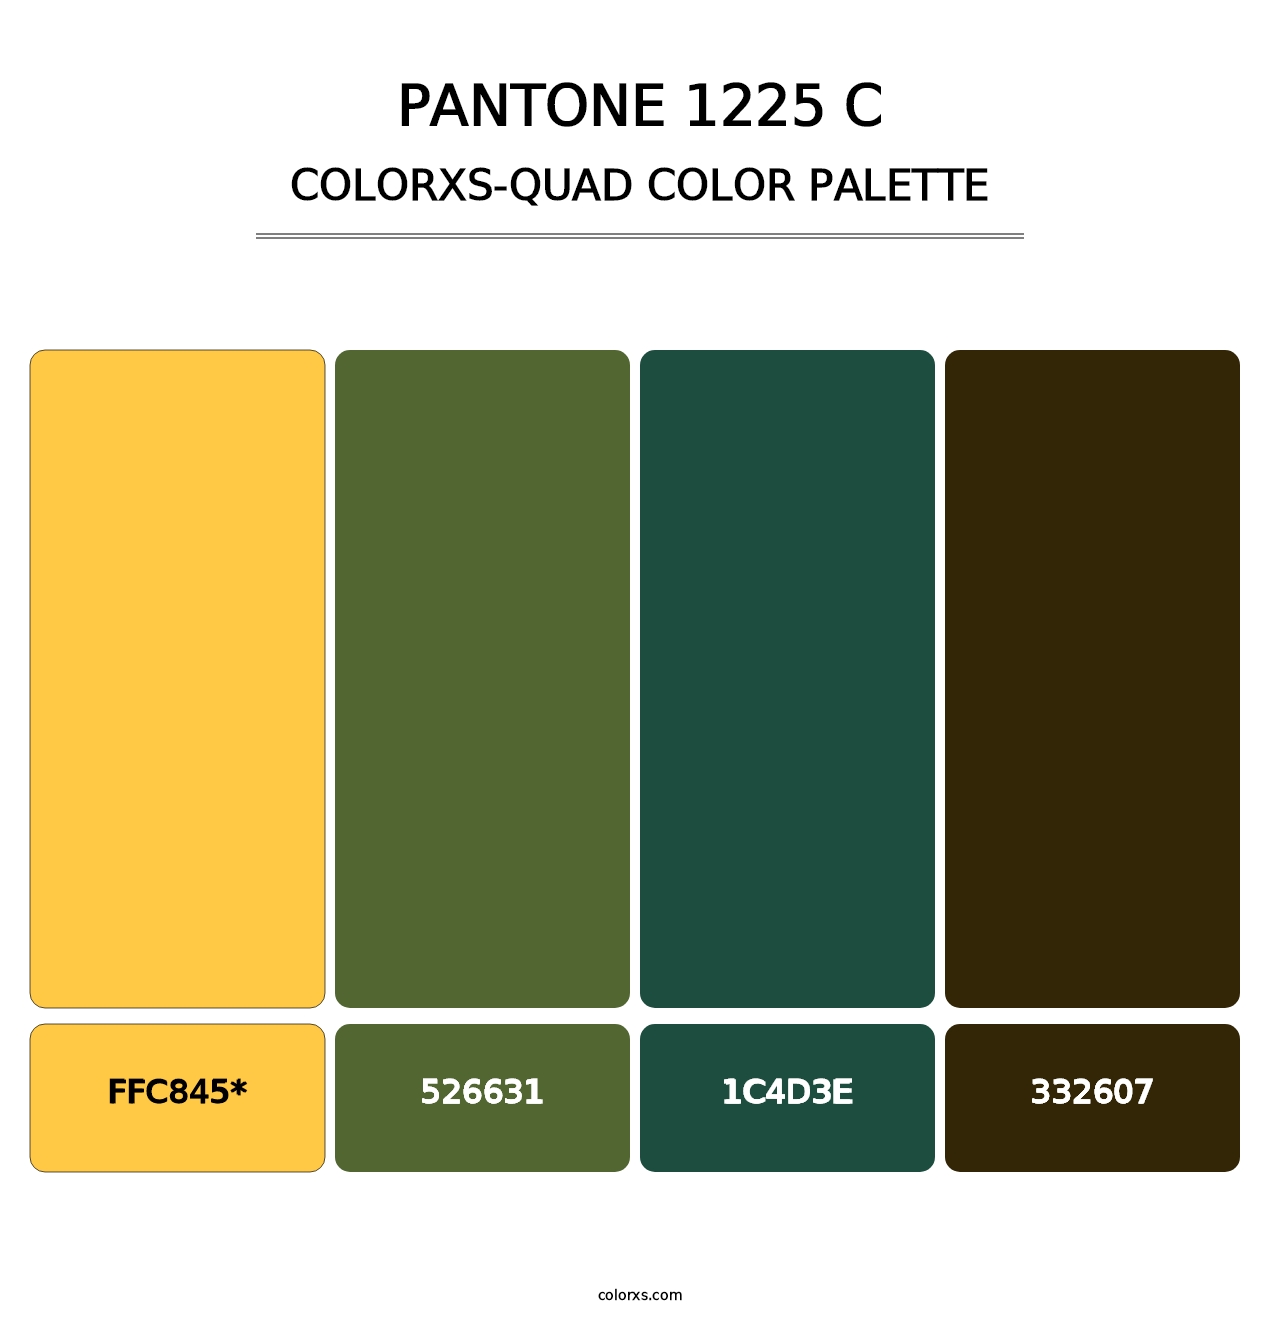 PANTONE 1225 C - Colorxs Quad Palette